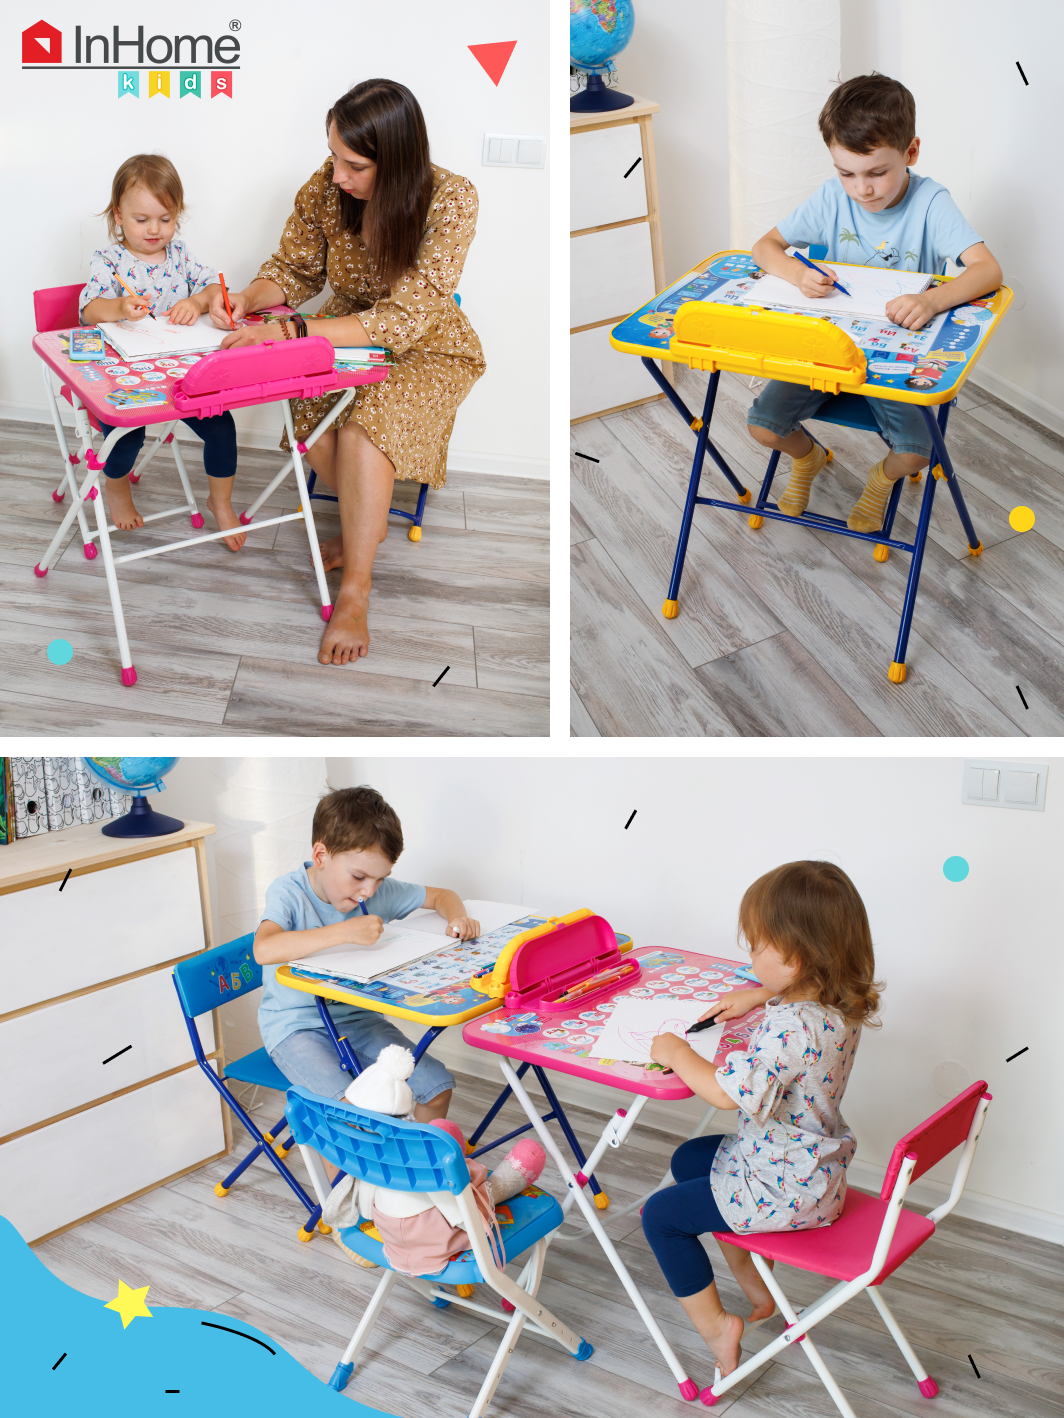 Комплект детской мебели InHome игровой стол и стул - фото 9